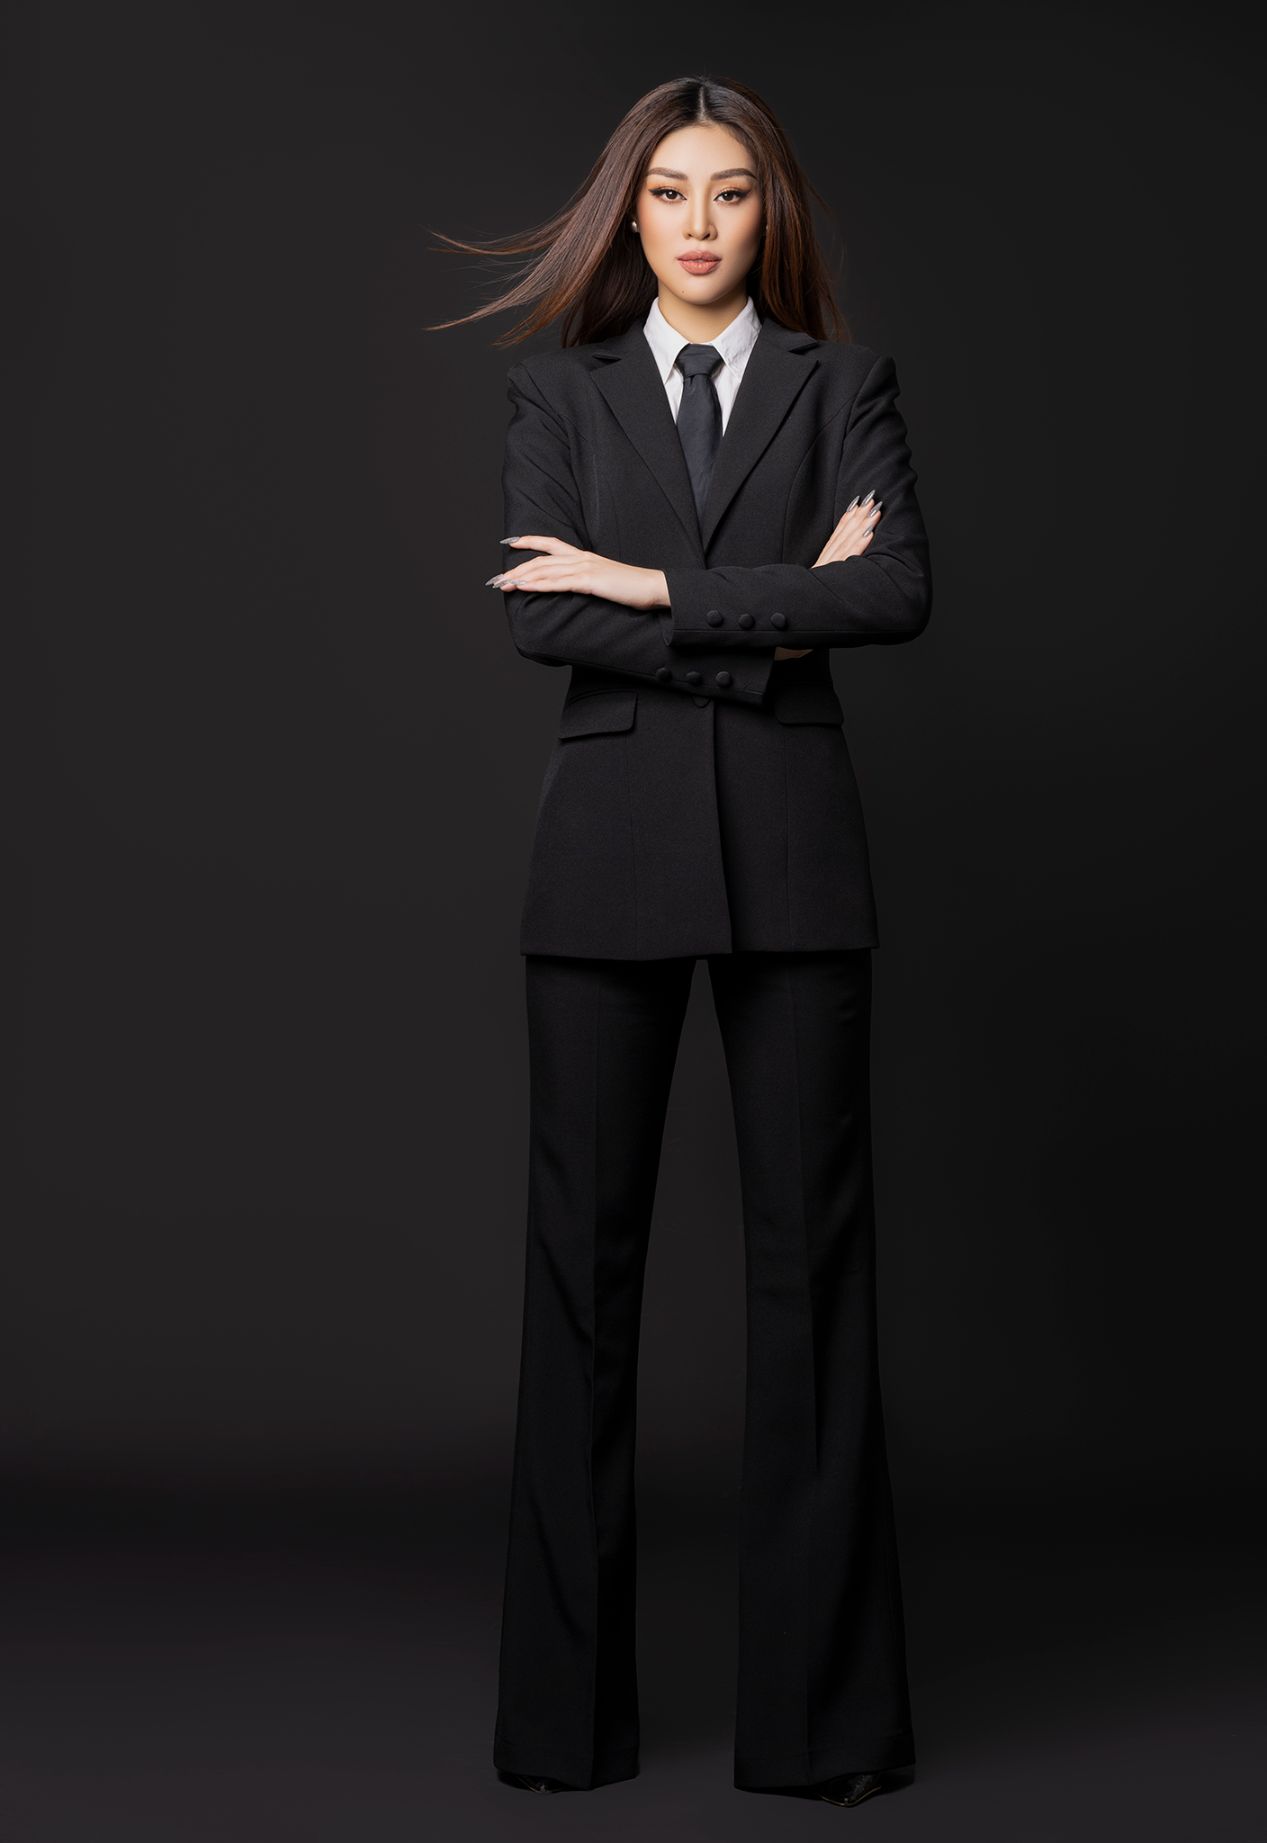 Business Woman 1 Khánh Vân lập công ty riêng, quyền lực trong vai trò Business Woman